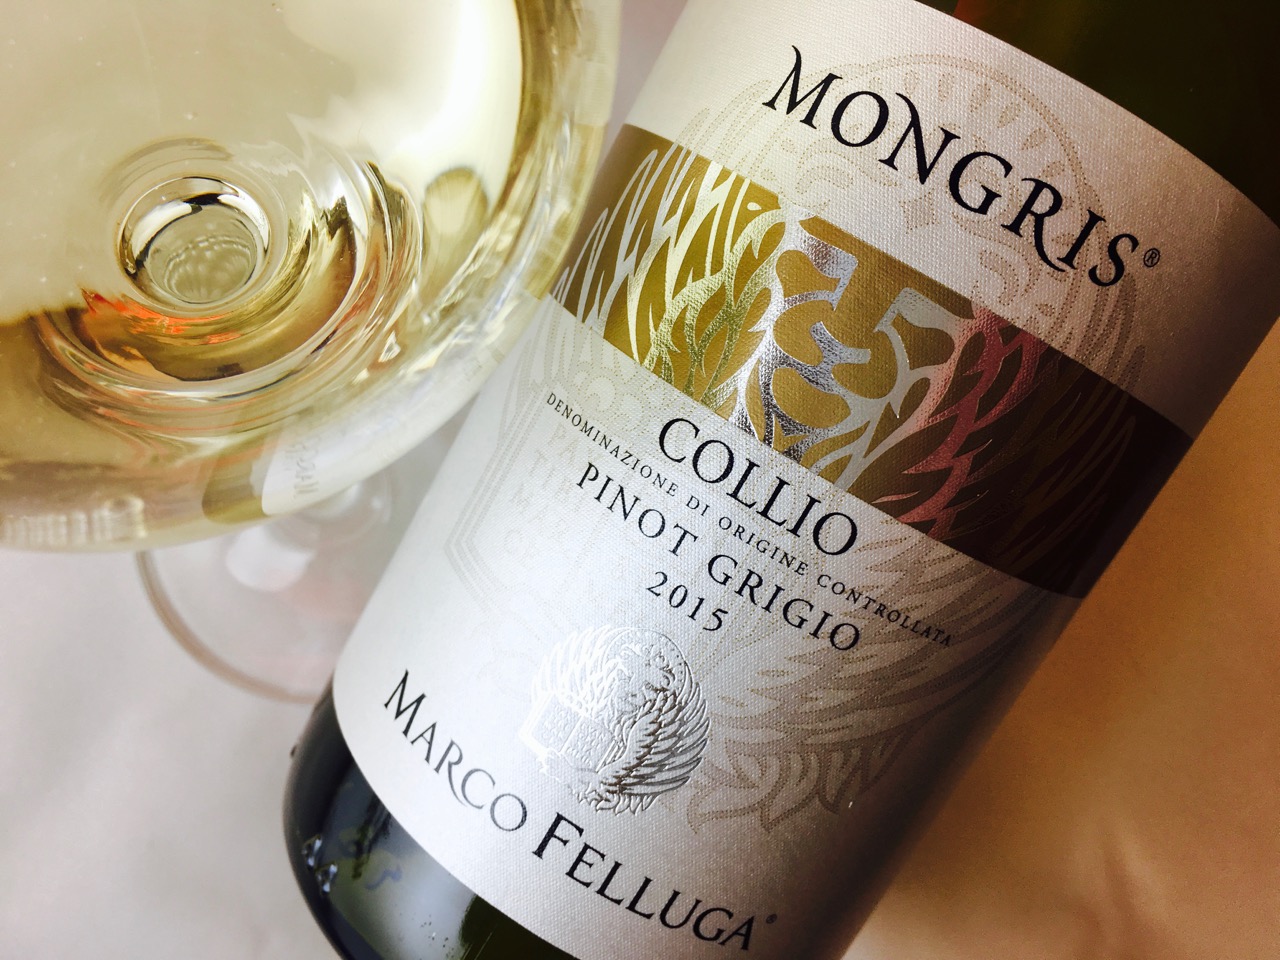 2015 Marco Felluga Pinot Grigio Mongris Collio